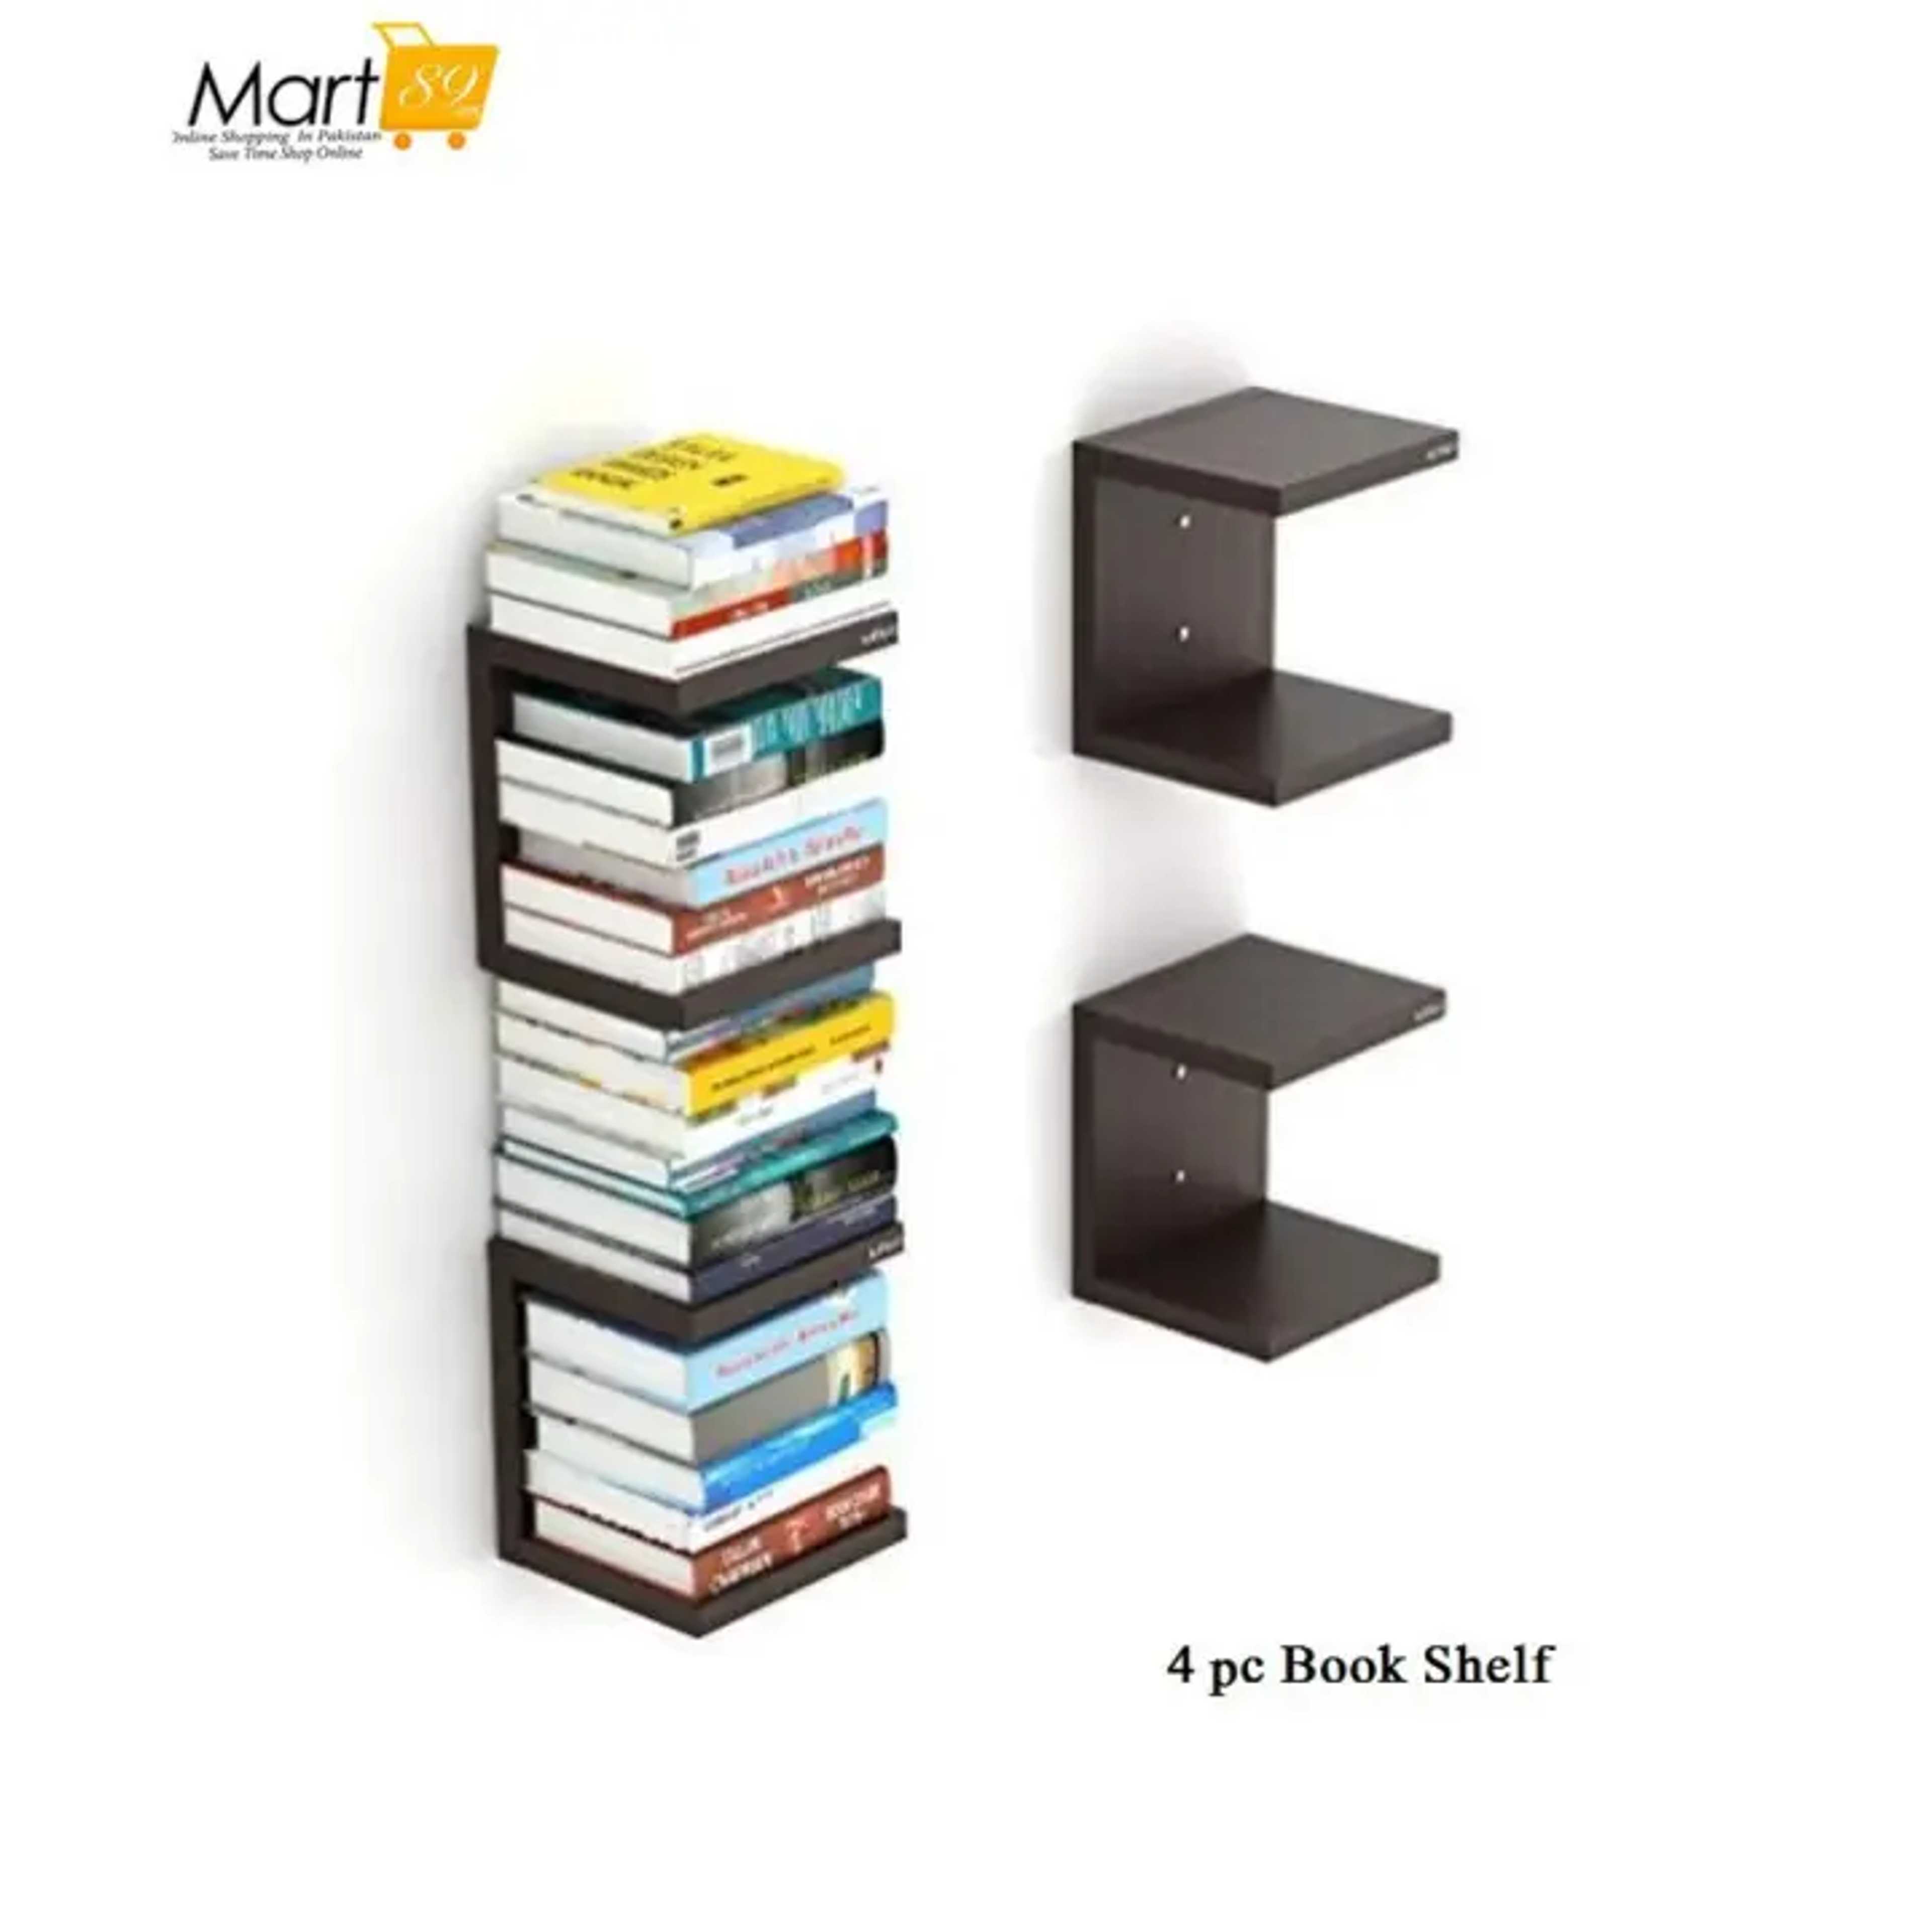 4 pc wall Mounted Stylish Book Shelfs